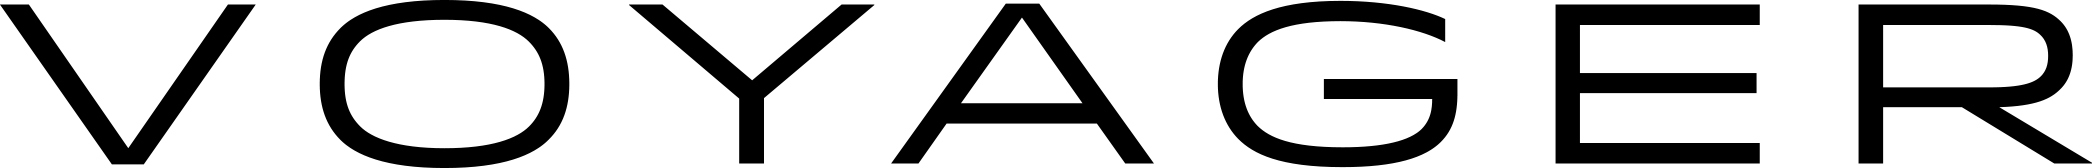 Voyager_logo.jpg